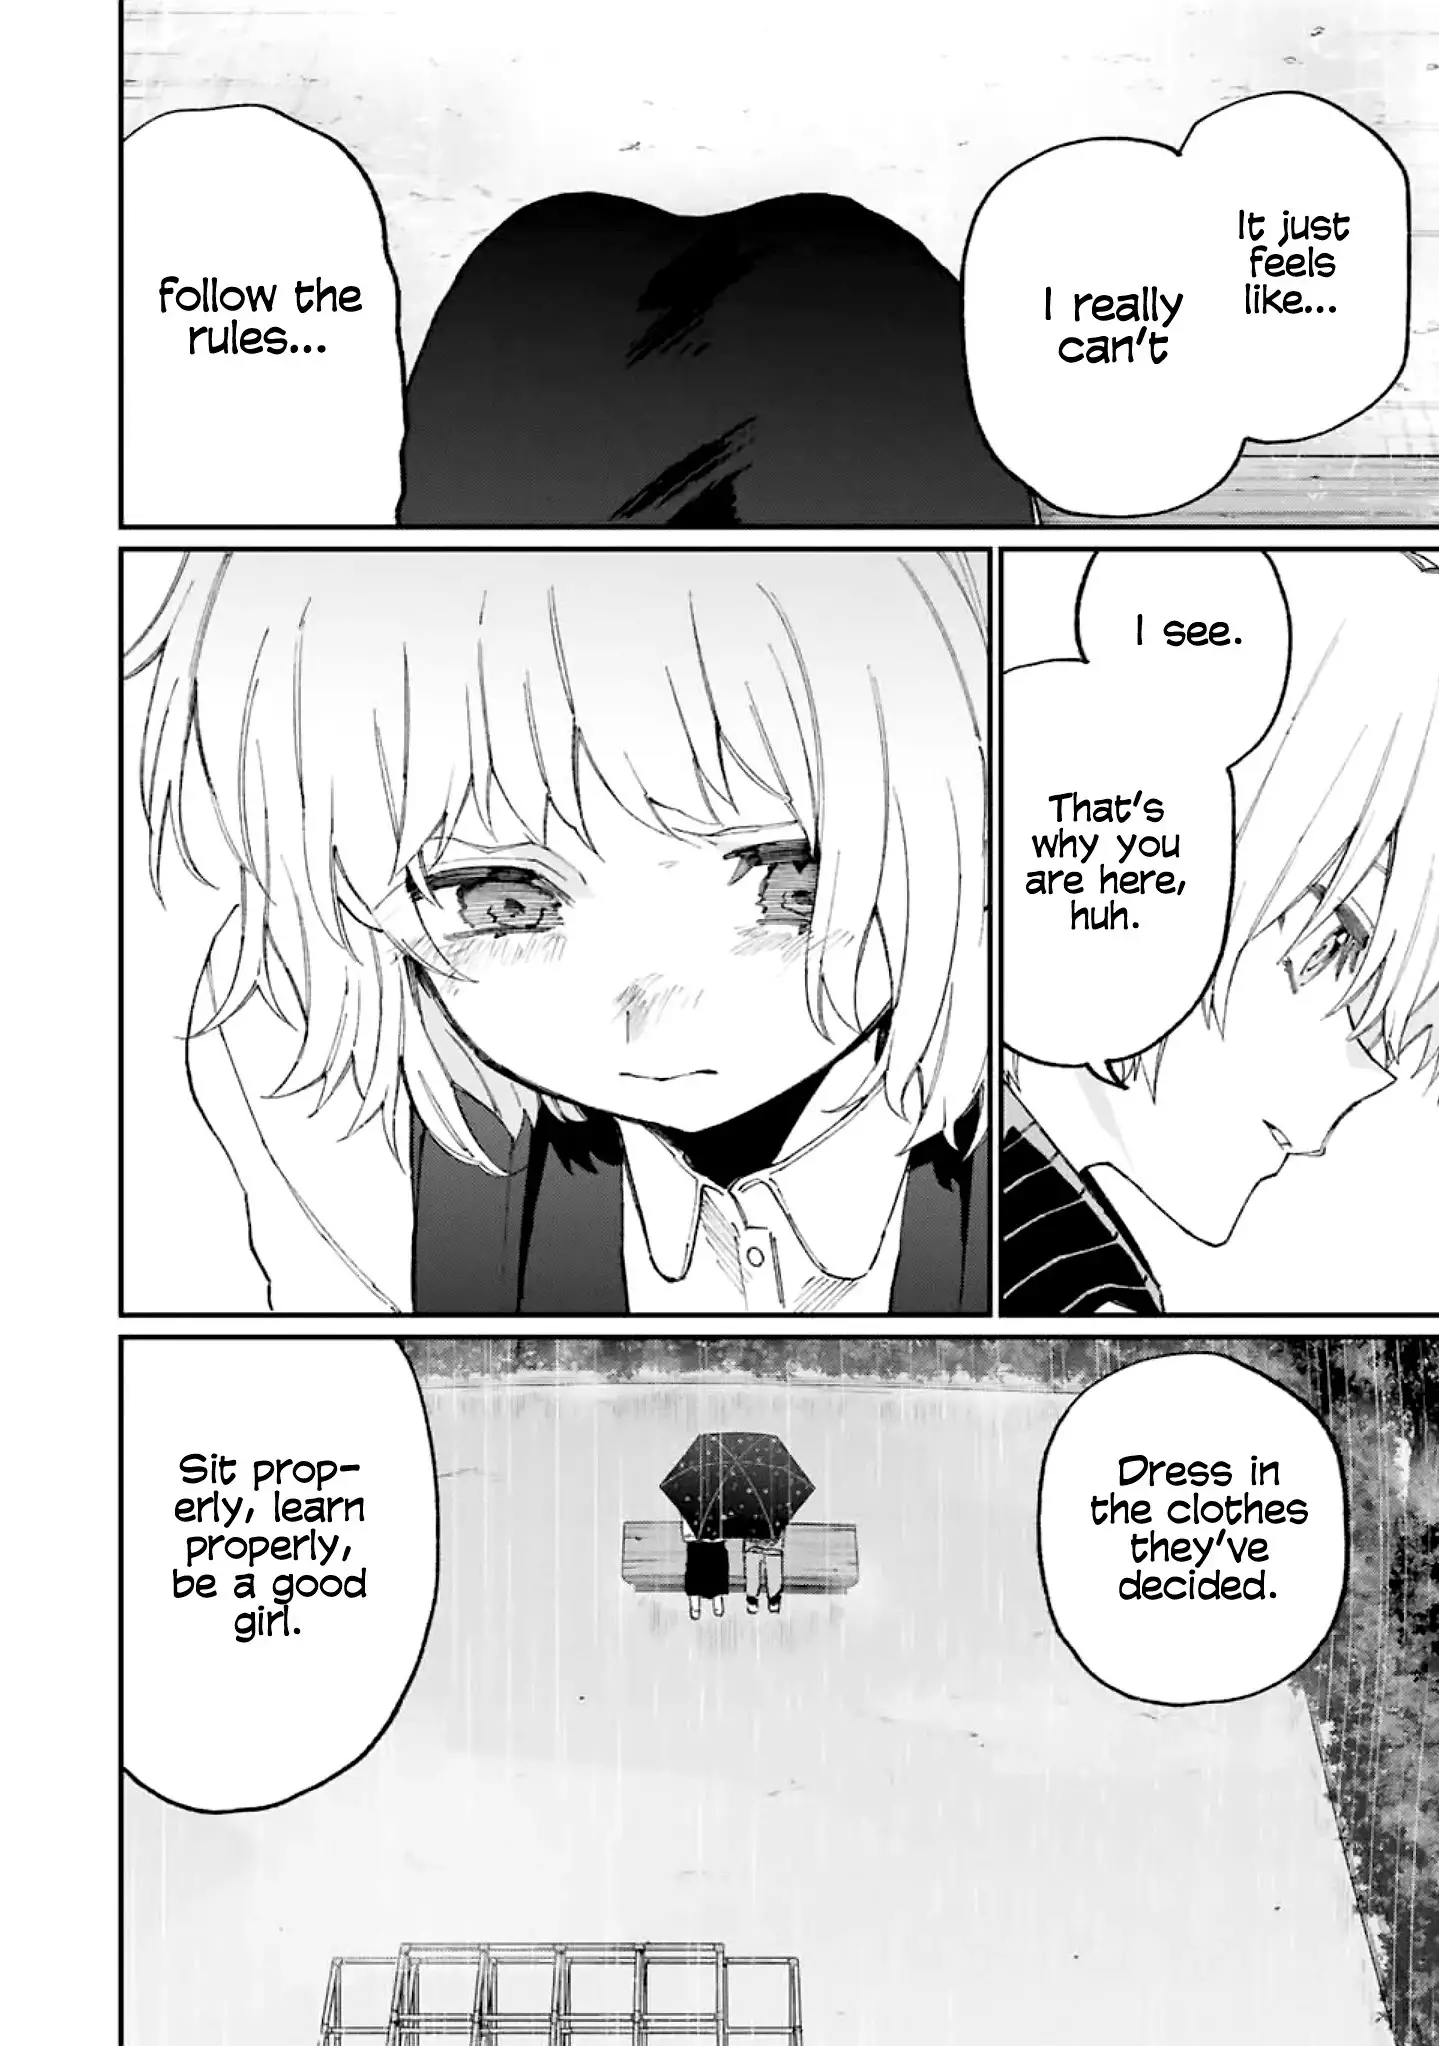 Shikimori's Not Just A Cutie - 129 page 9